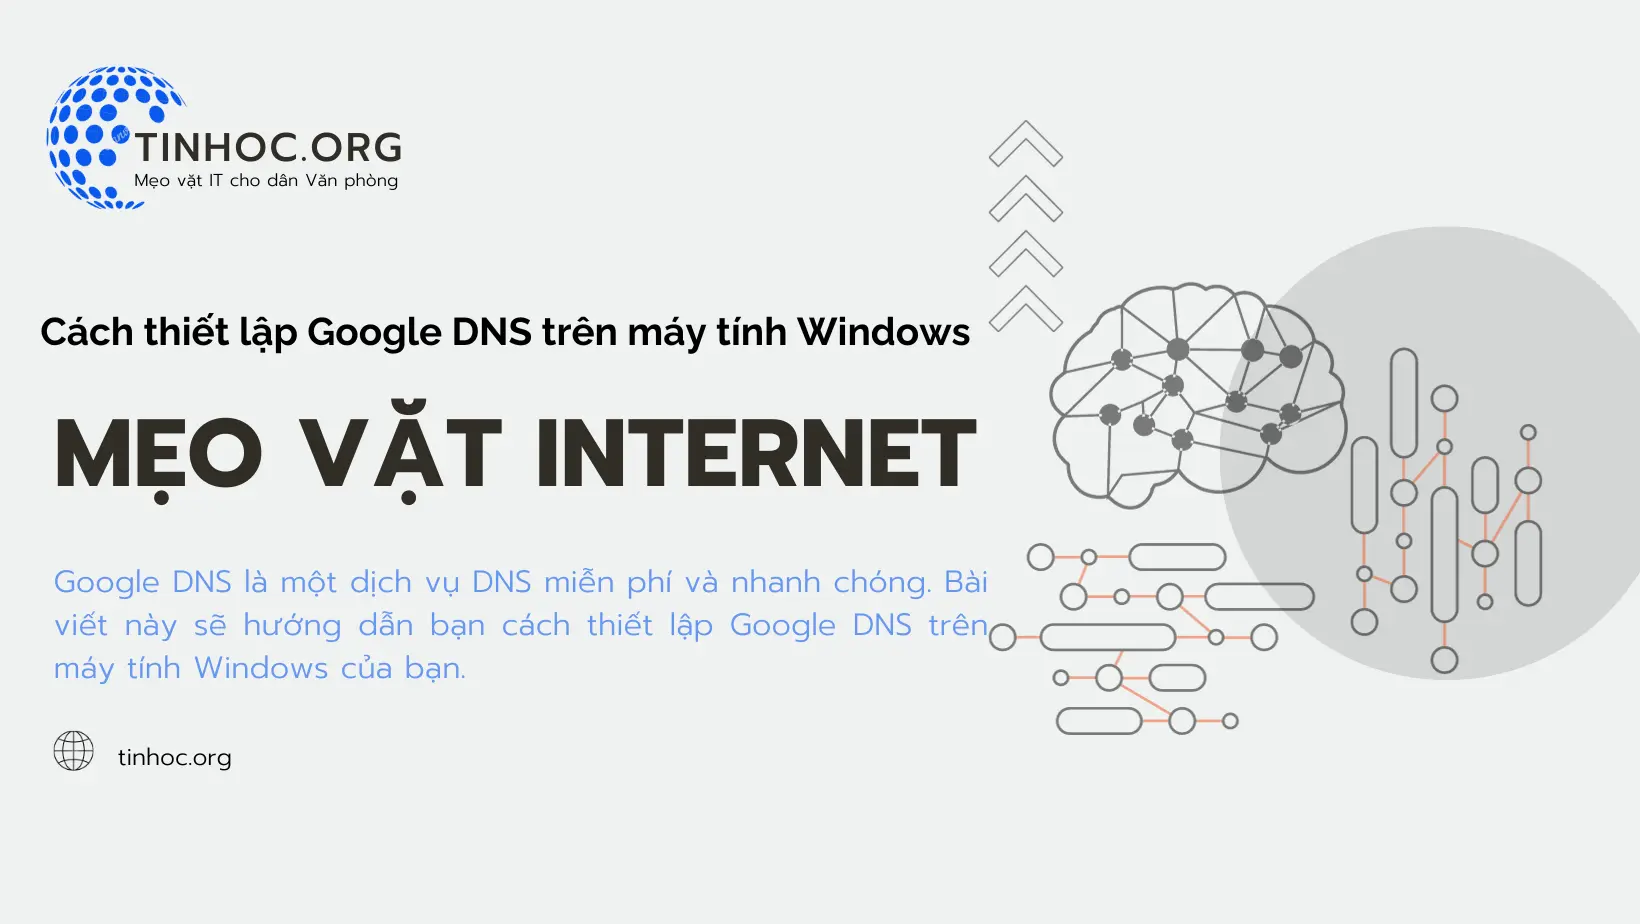 Cách thiết lập Google DNS trên máy tính Windows